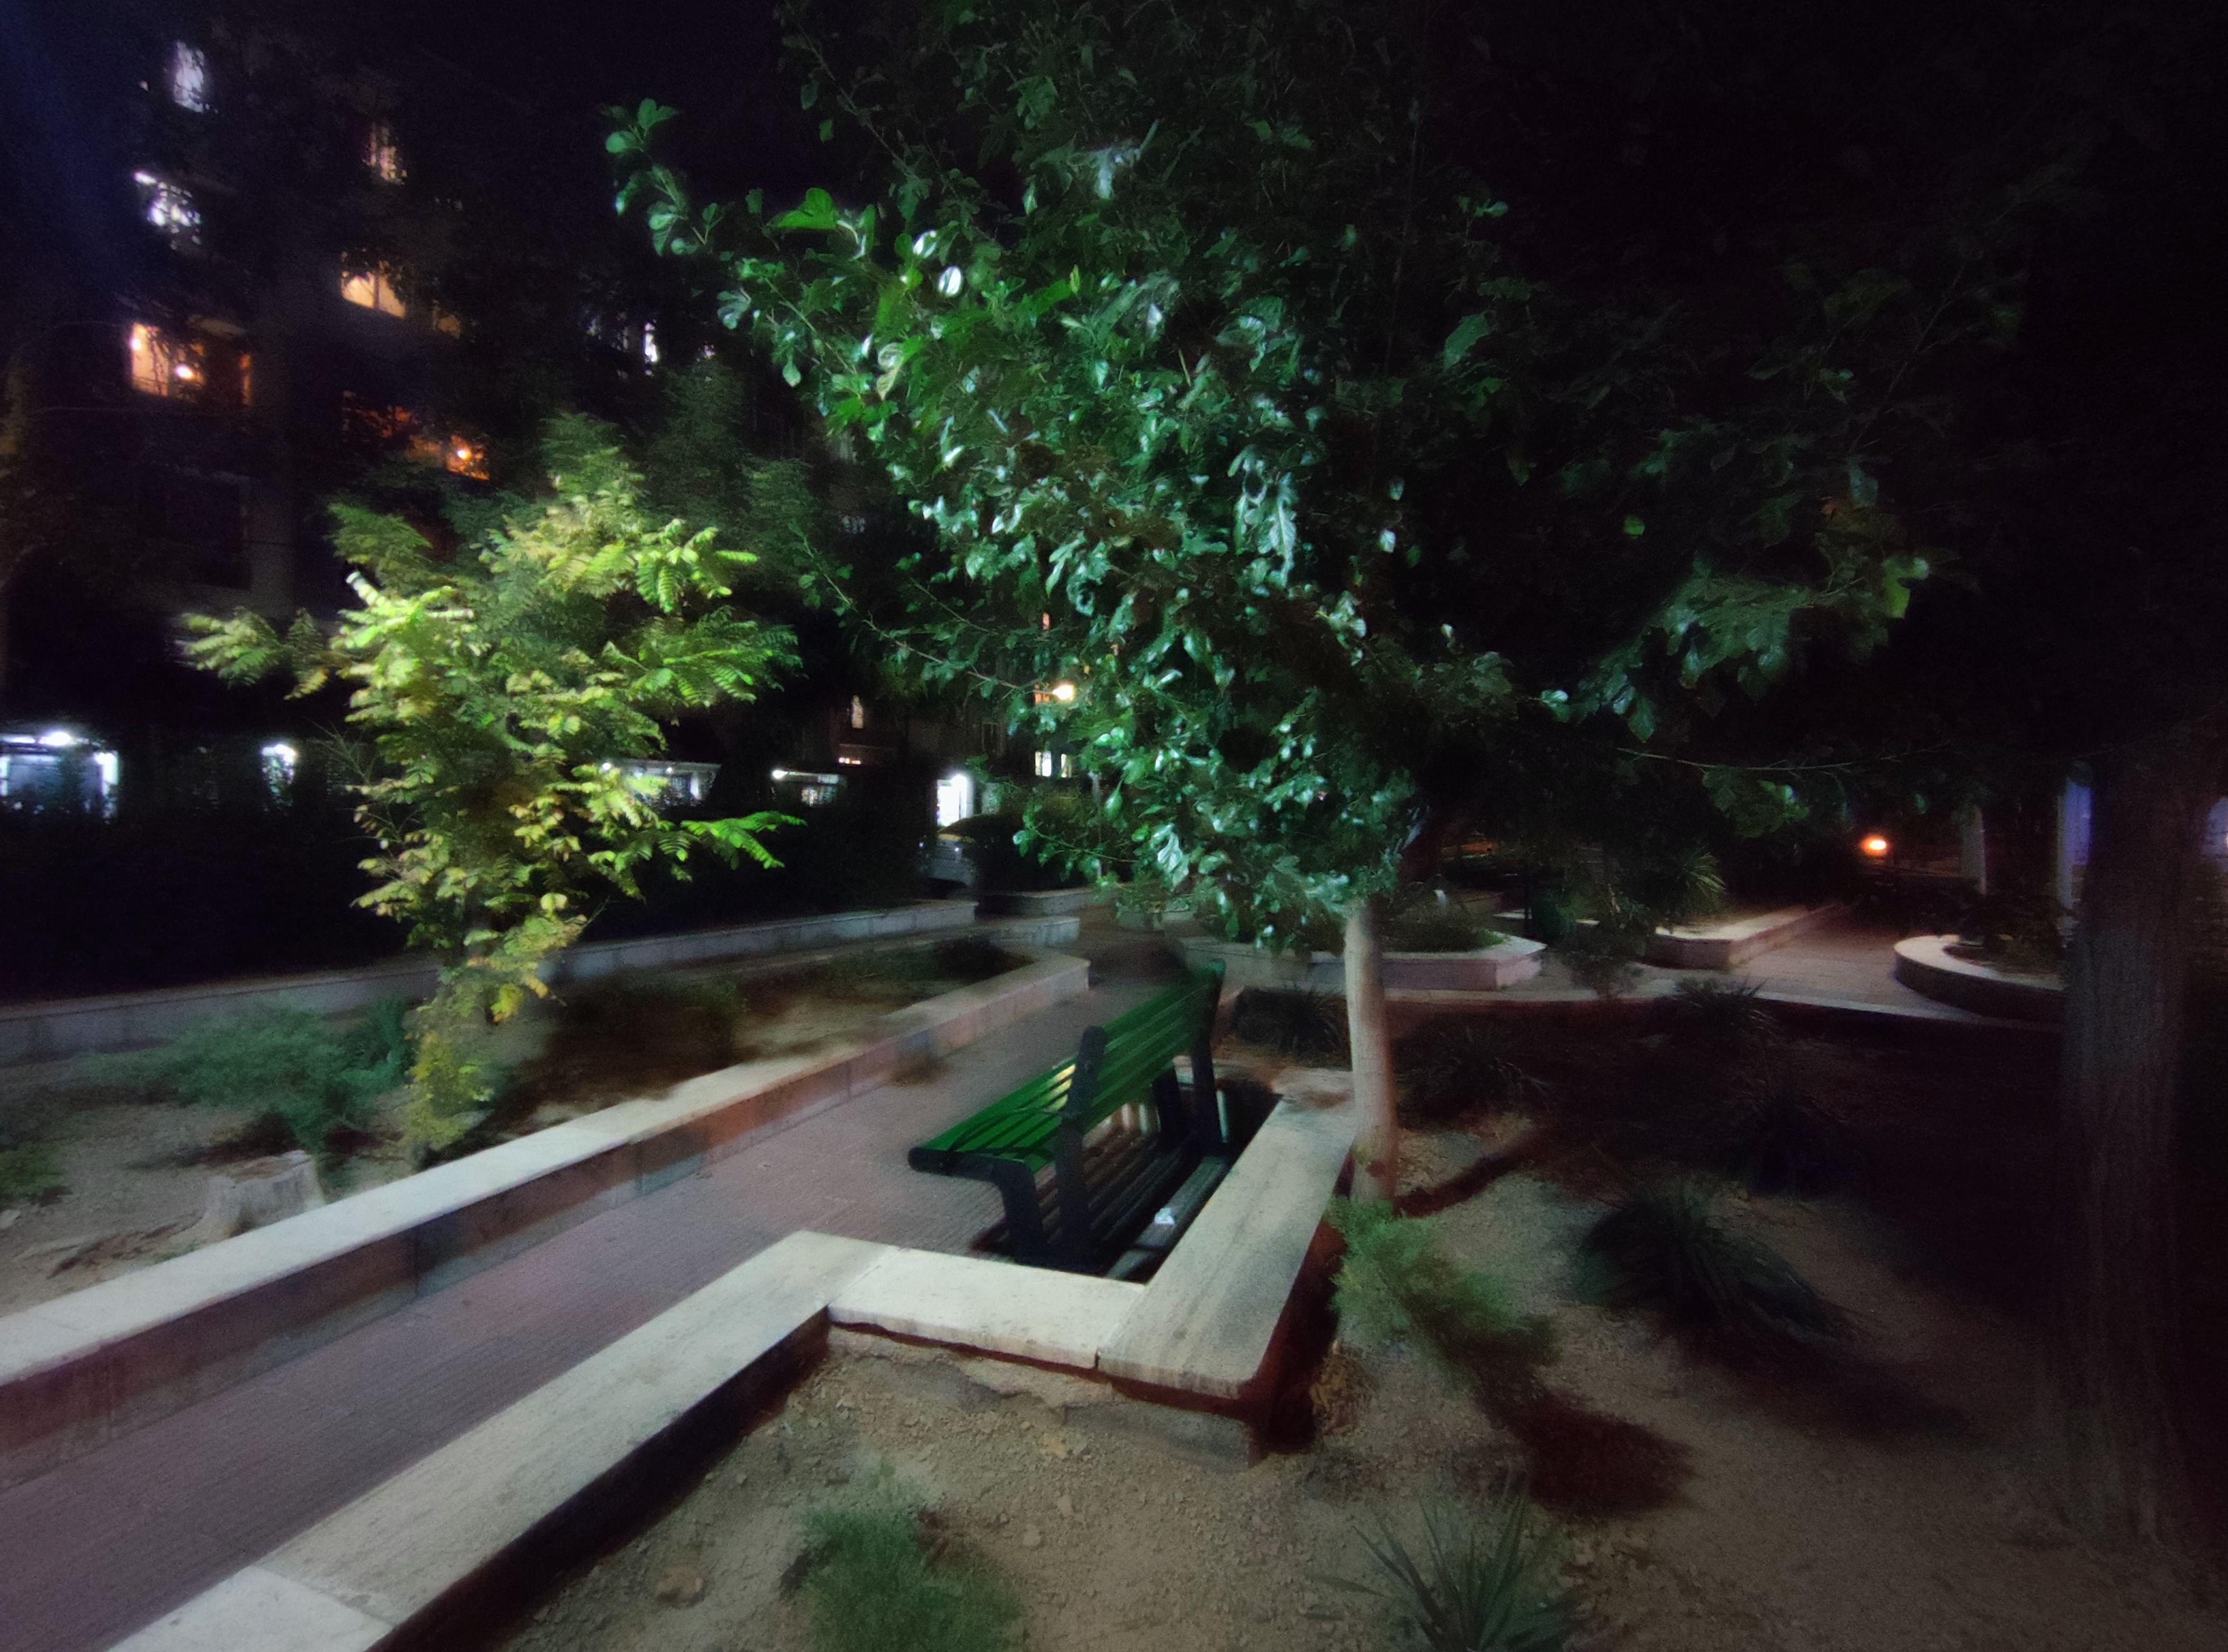 نمونه عکس دوربین اولتراواید شیائومی می 10 در محیط تاریک - درخت و نیمکت پارک